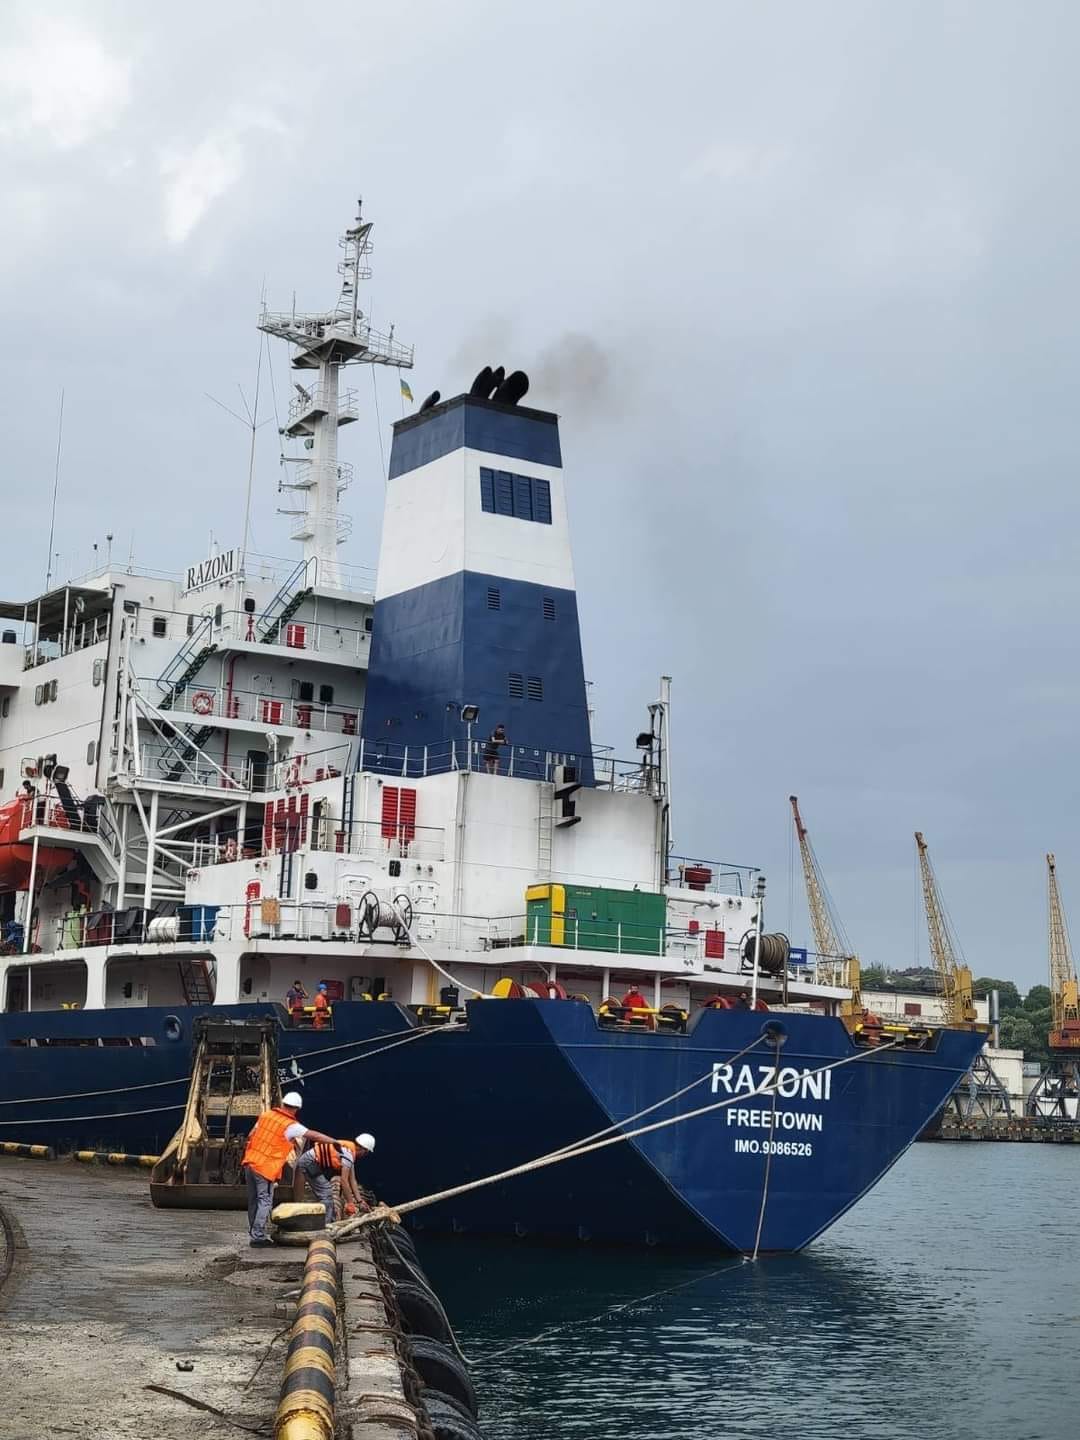 Первое судно с украинским зерном покинуло порт Одессы